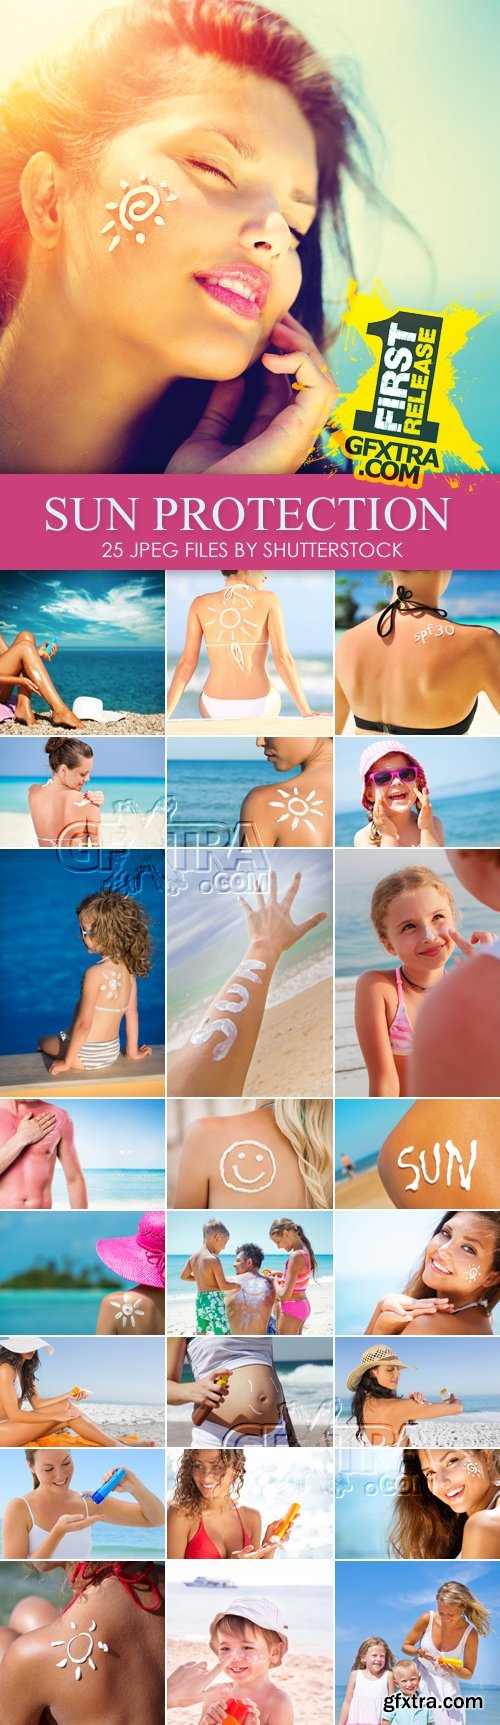 Stock Photo - Sunscreen, Sun Protection Concept